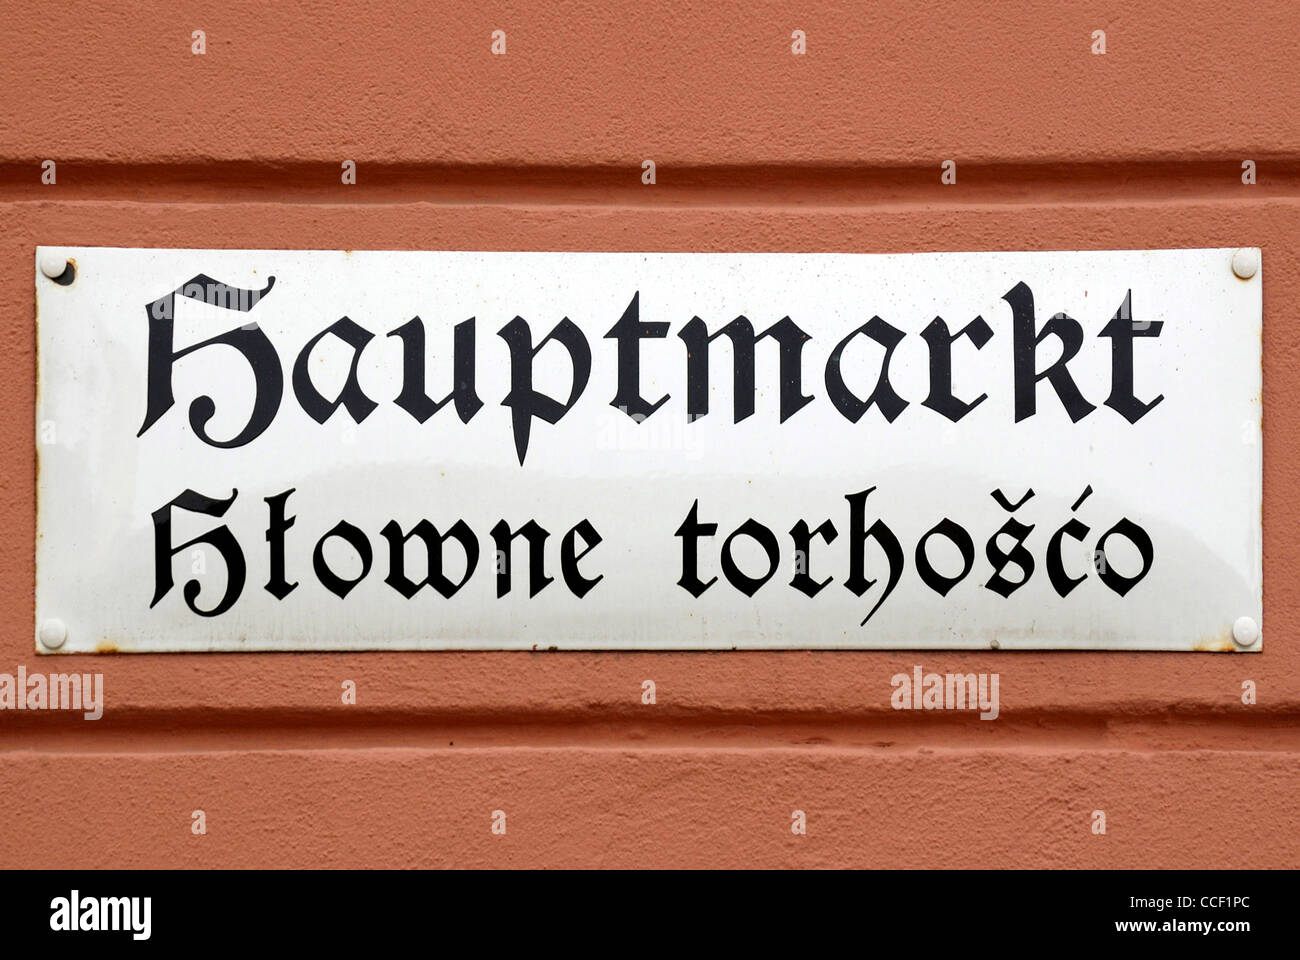 Straßenschild der Bautzen in Deutsch und Sorbisch auf dem Hauptmarkt - Hlowne Torhosco. Stockfoto